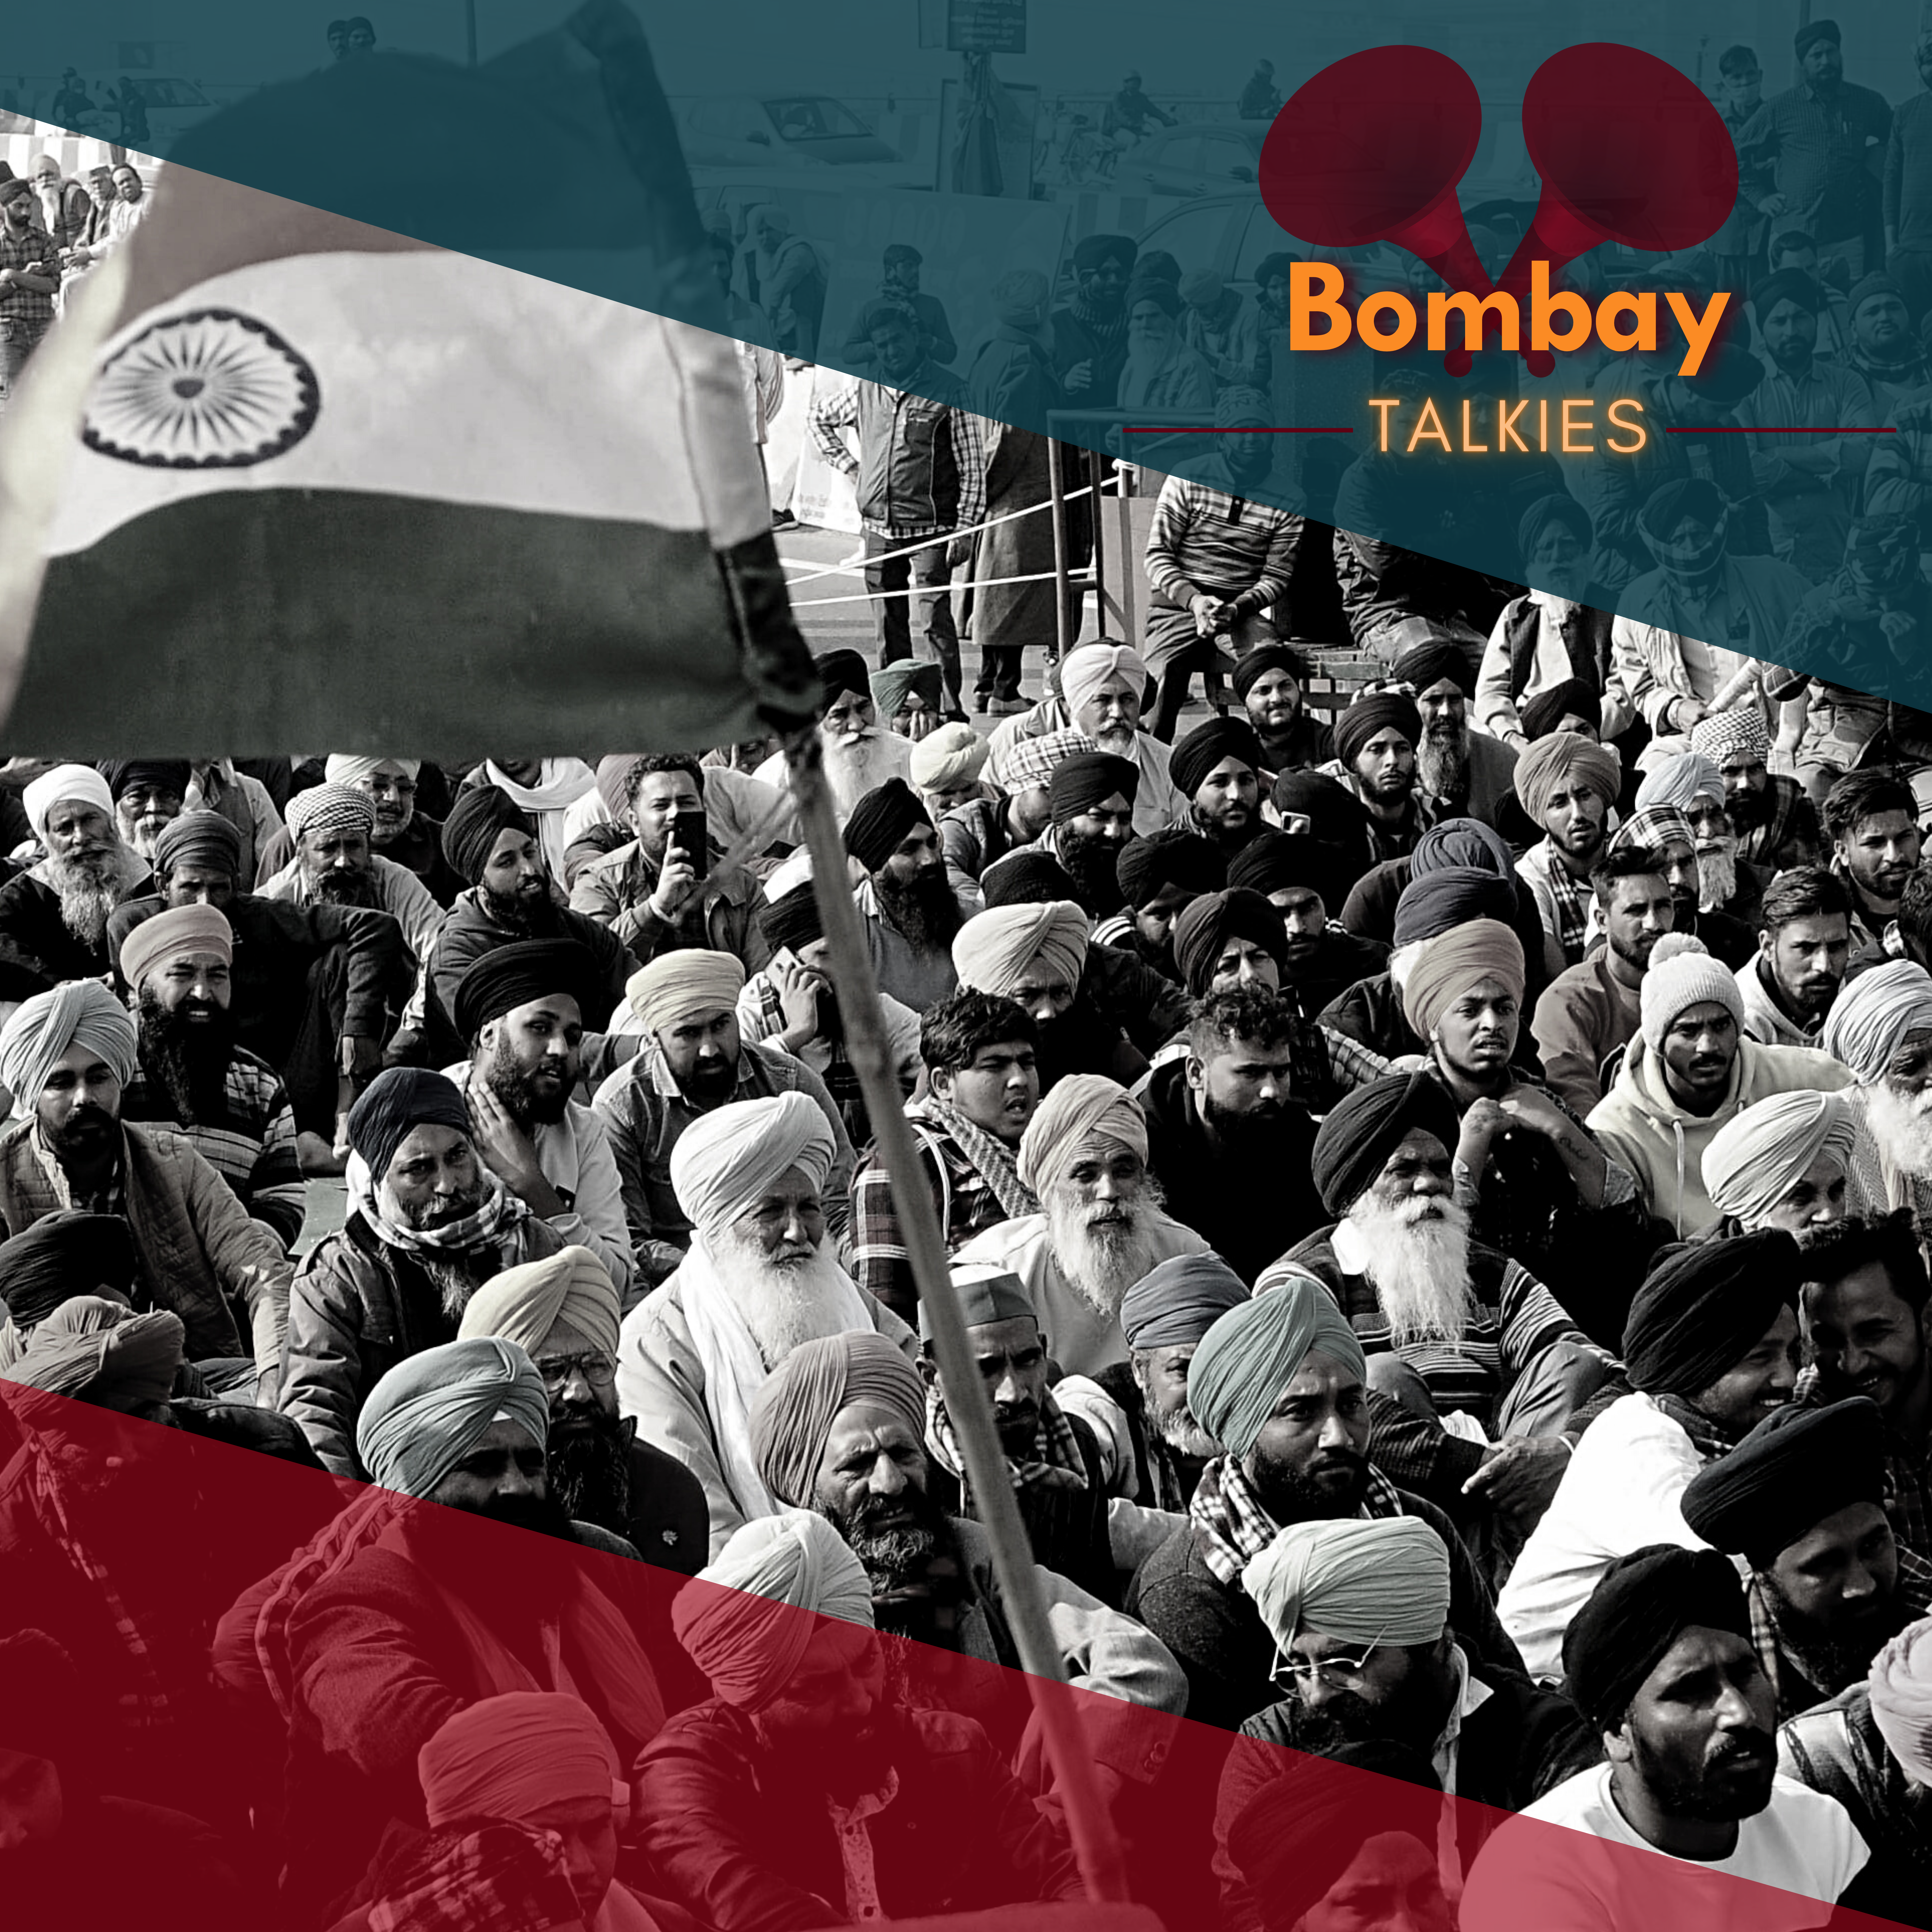 Über Proteste, Hindu-First-Politik und die Begegnung mit dem Schicksal